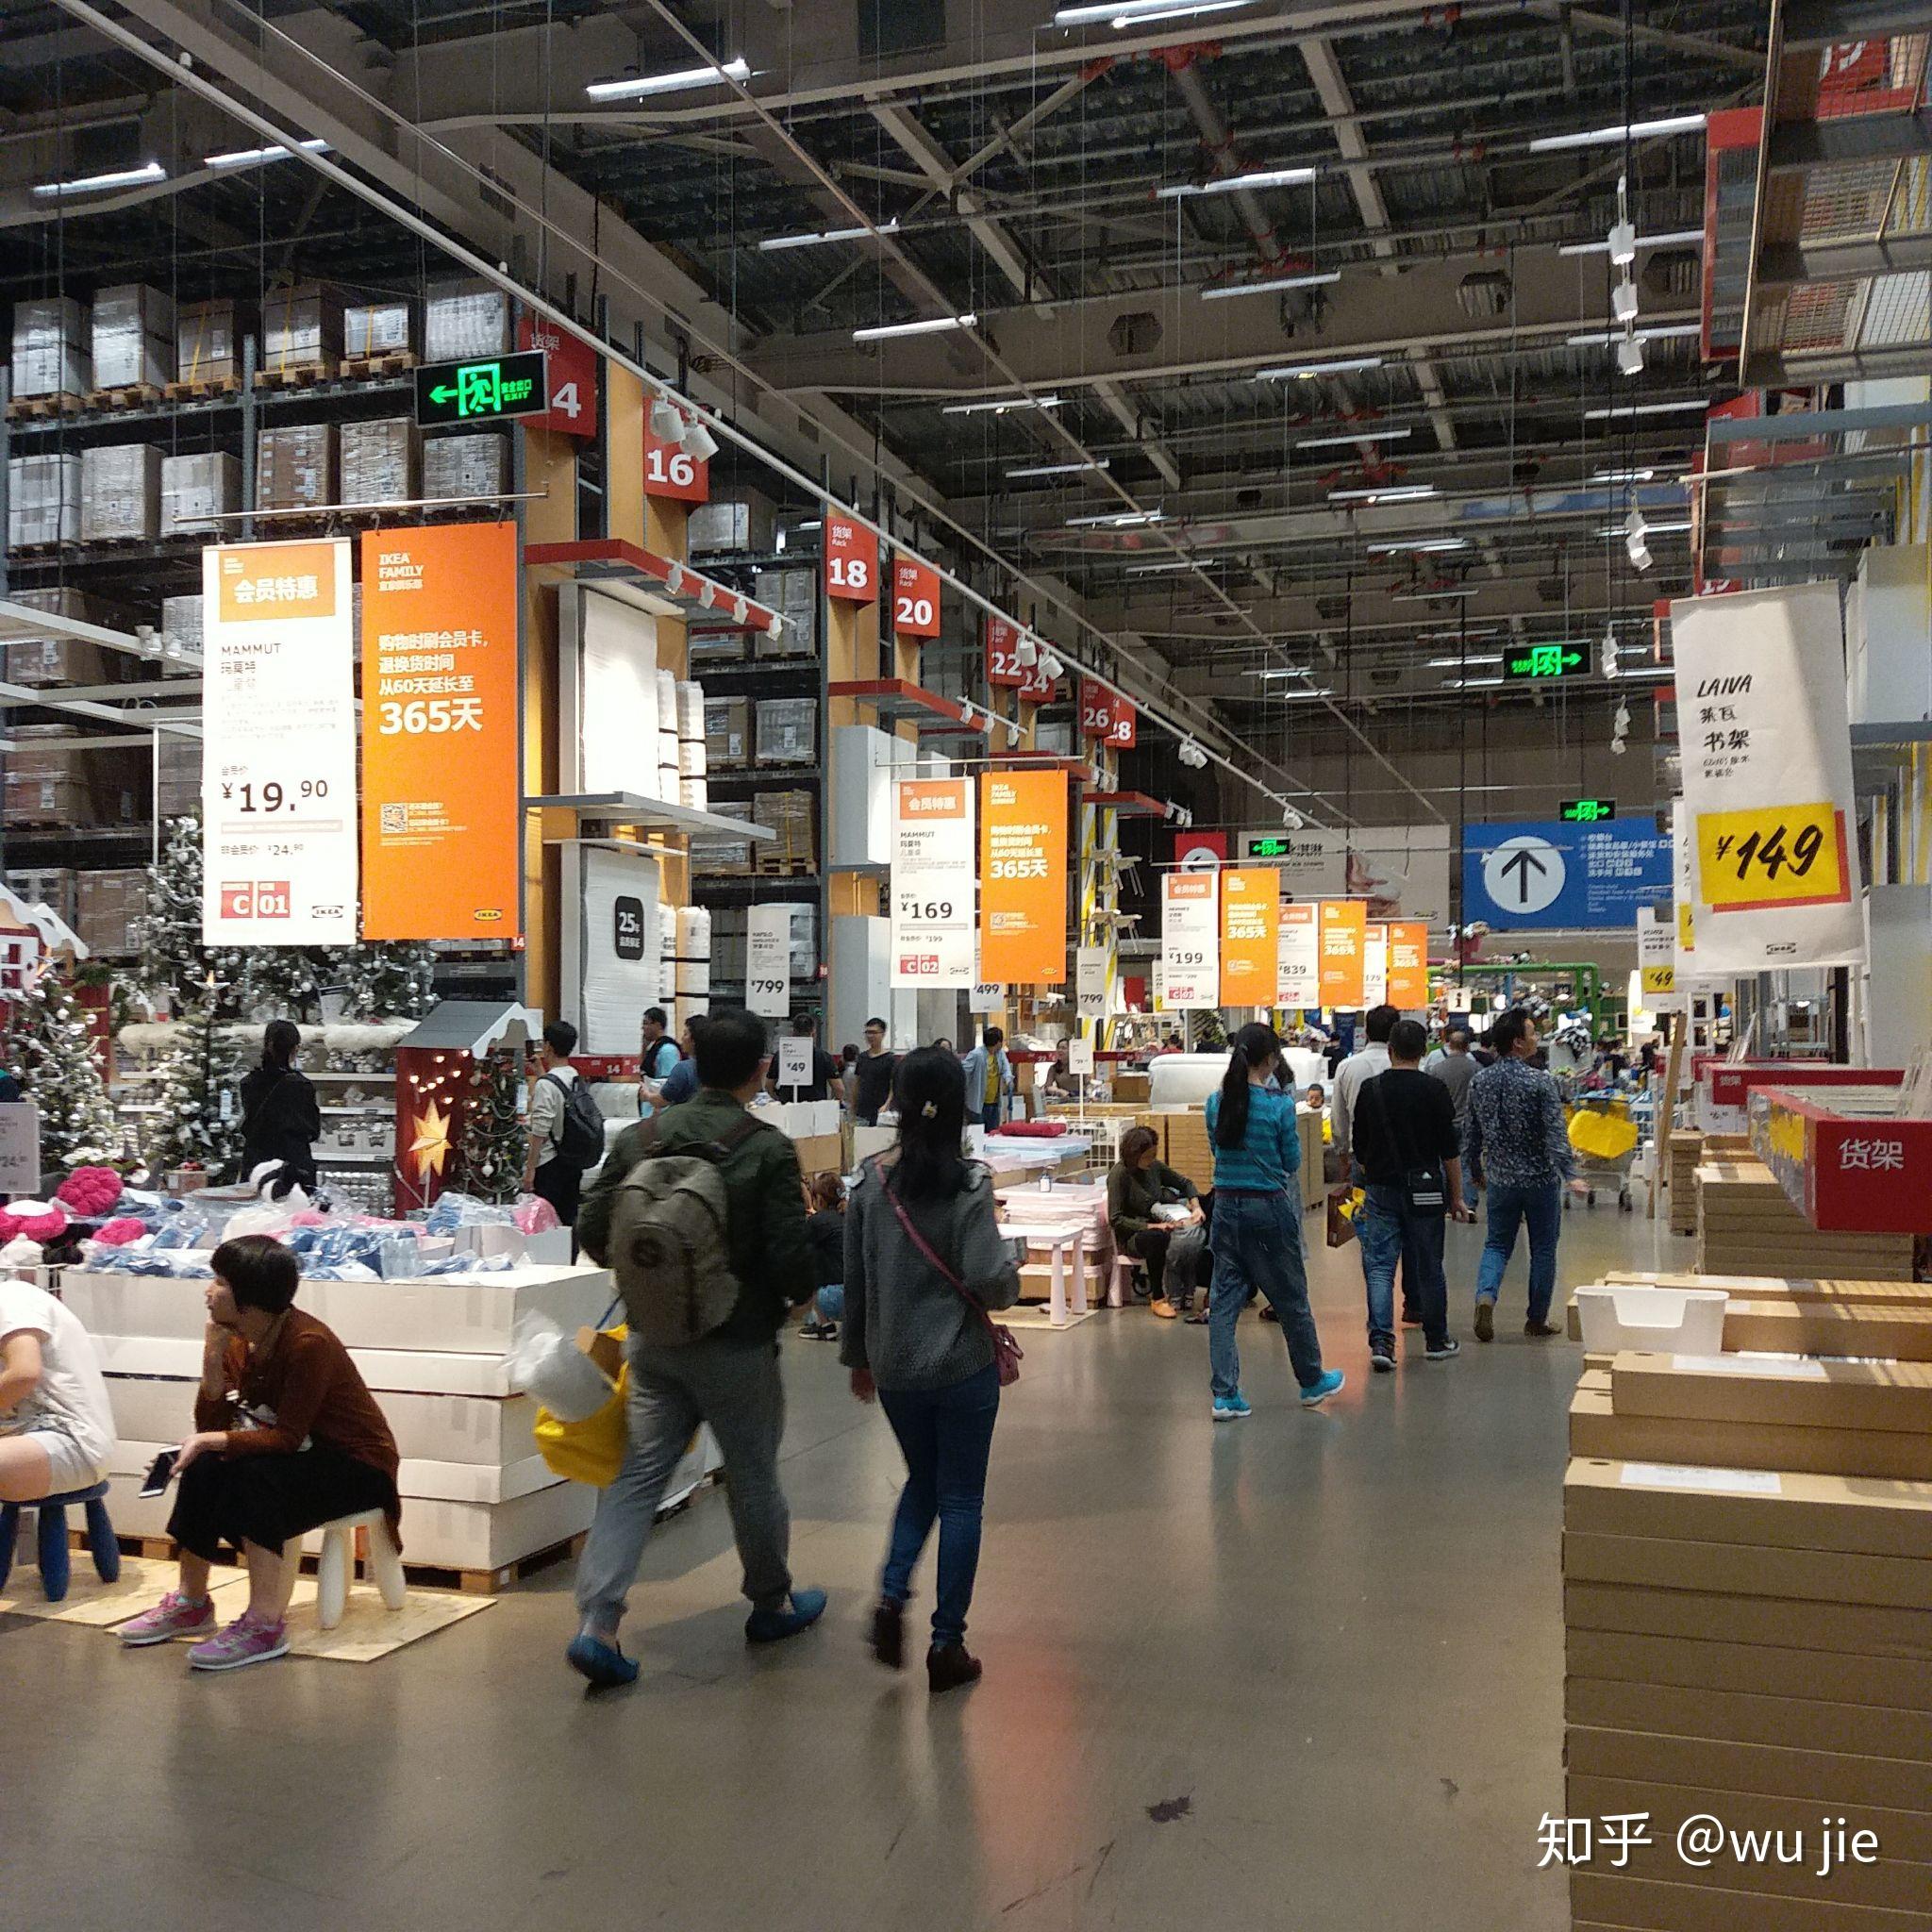 IKEA 创始人 Ingvar Kamprad 逝世，他让美好设计进入全世界的寻常百姓家 | 理想生活实验室 - 为更理想的生活